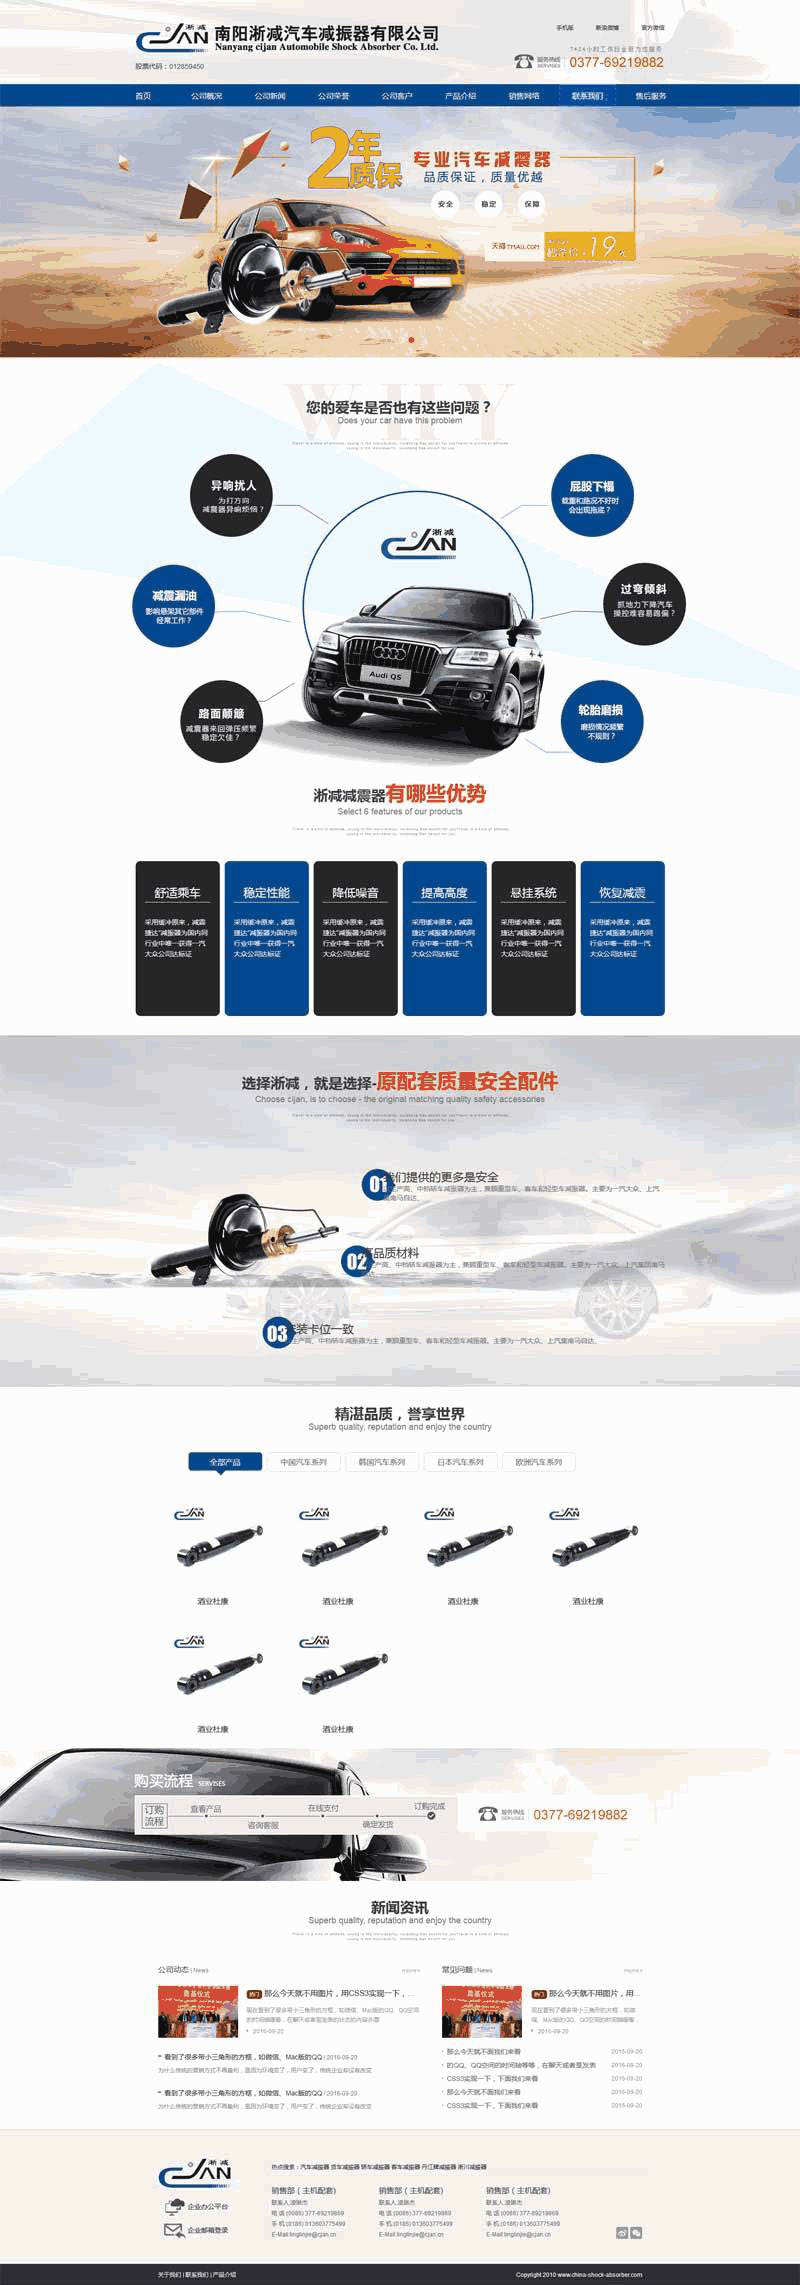 蓝色的汽车设备营销公司网站Wordpress模板（带手机版）效果图